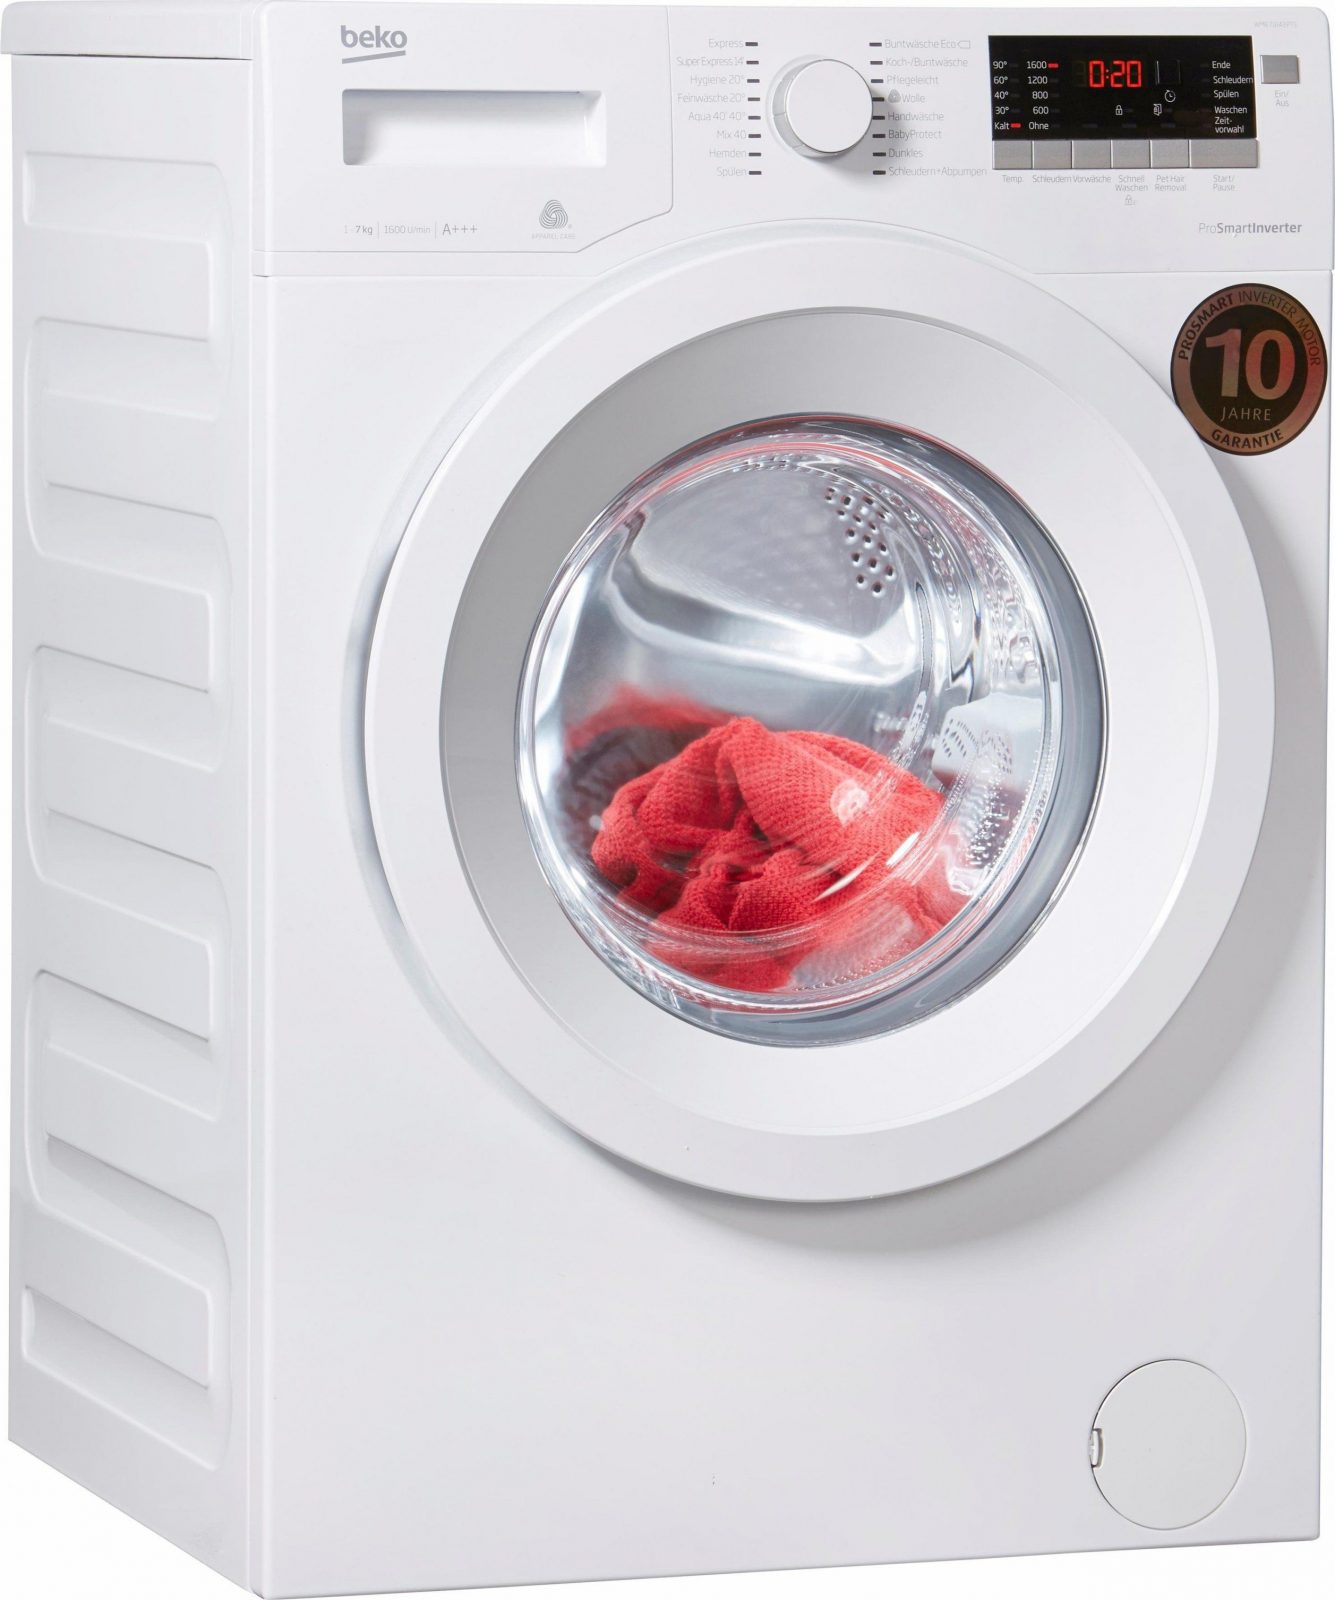 Beko Wmb 71643 Pte Waschmaschine Im Test 2018 von Beko Wmb 71443 Pte Stiftung Warentest Bild